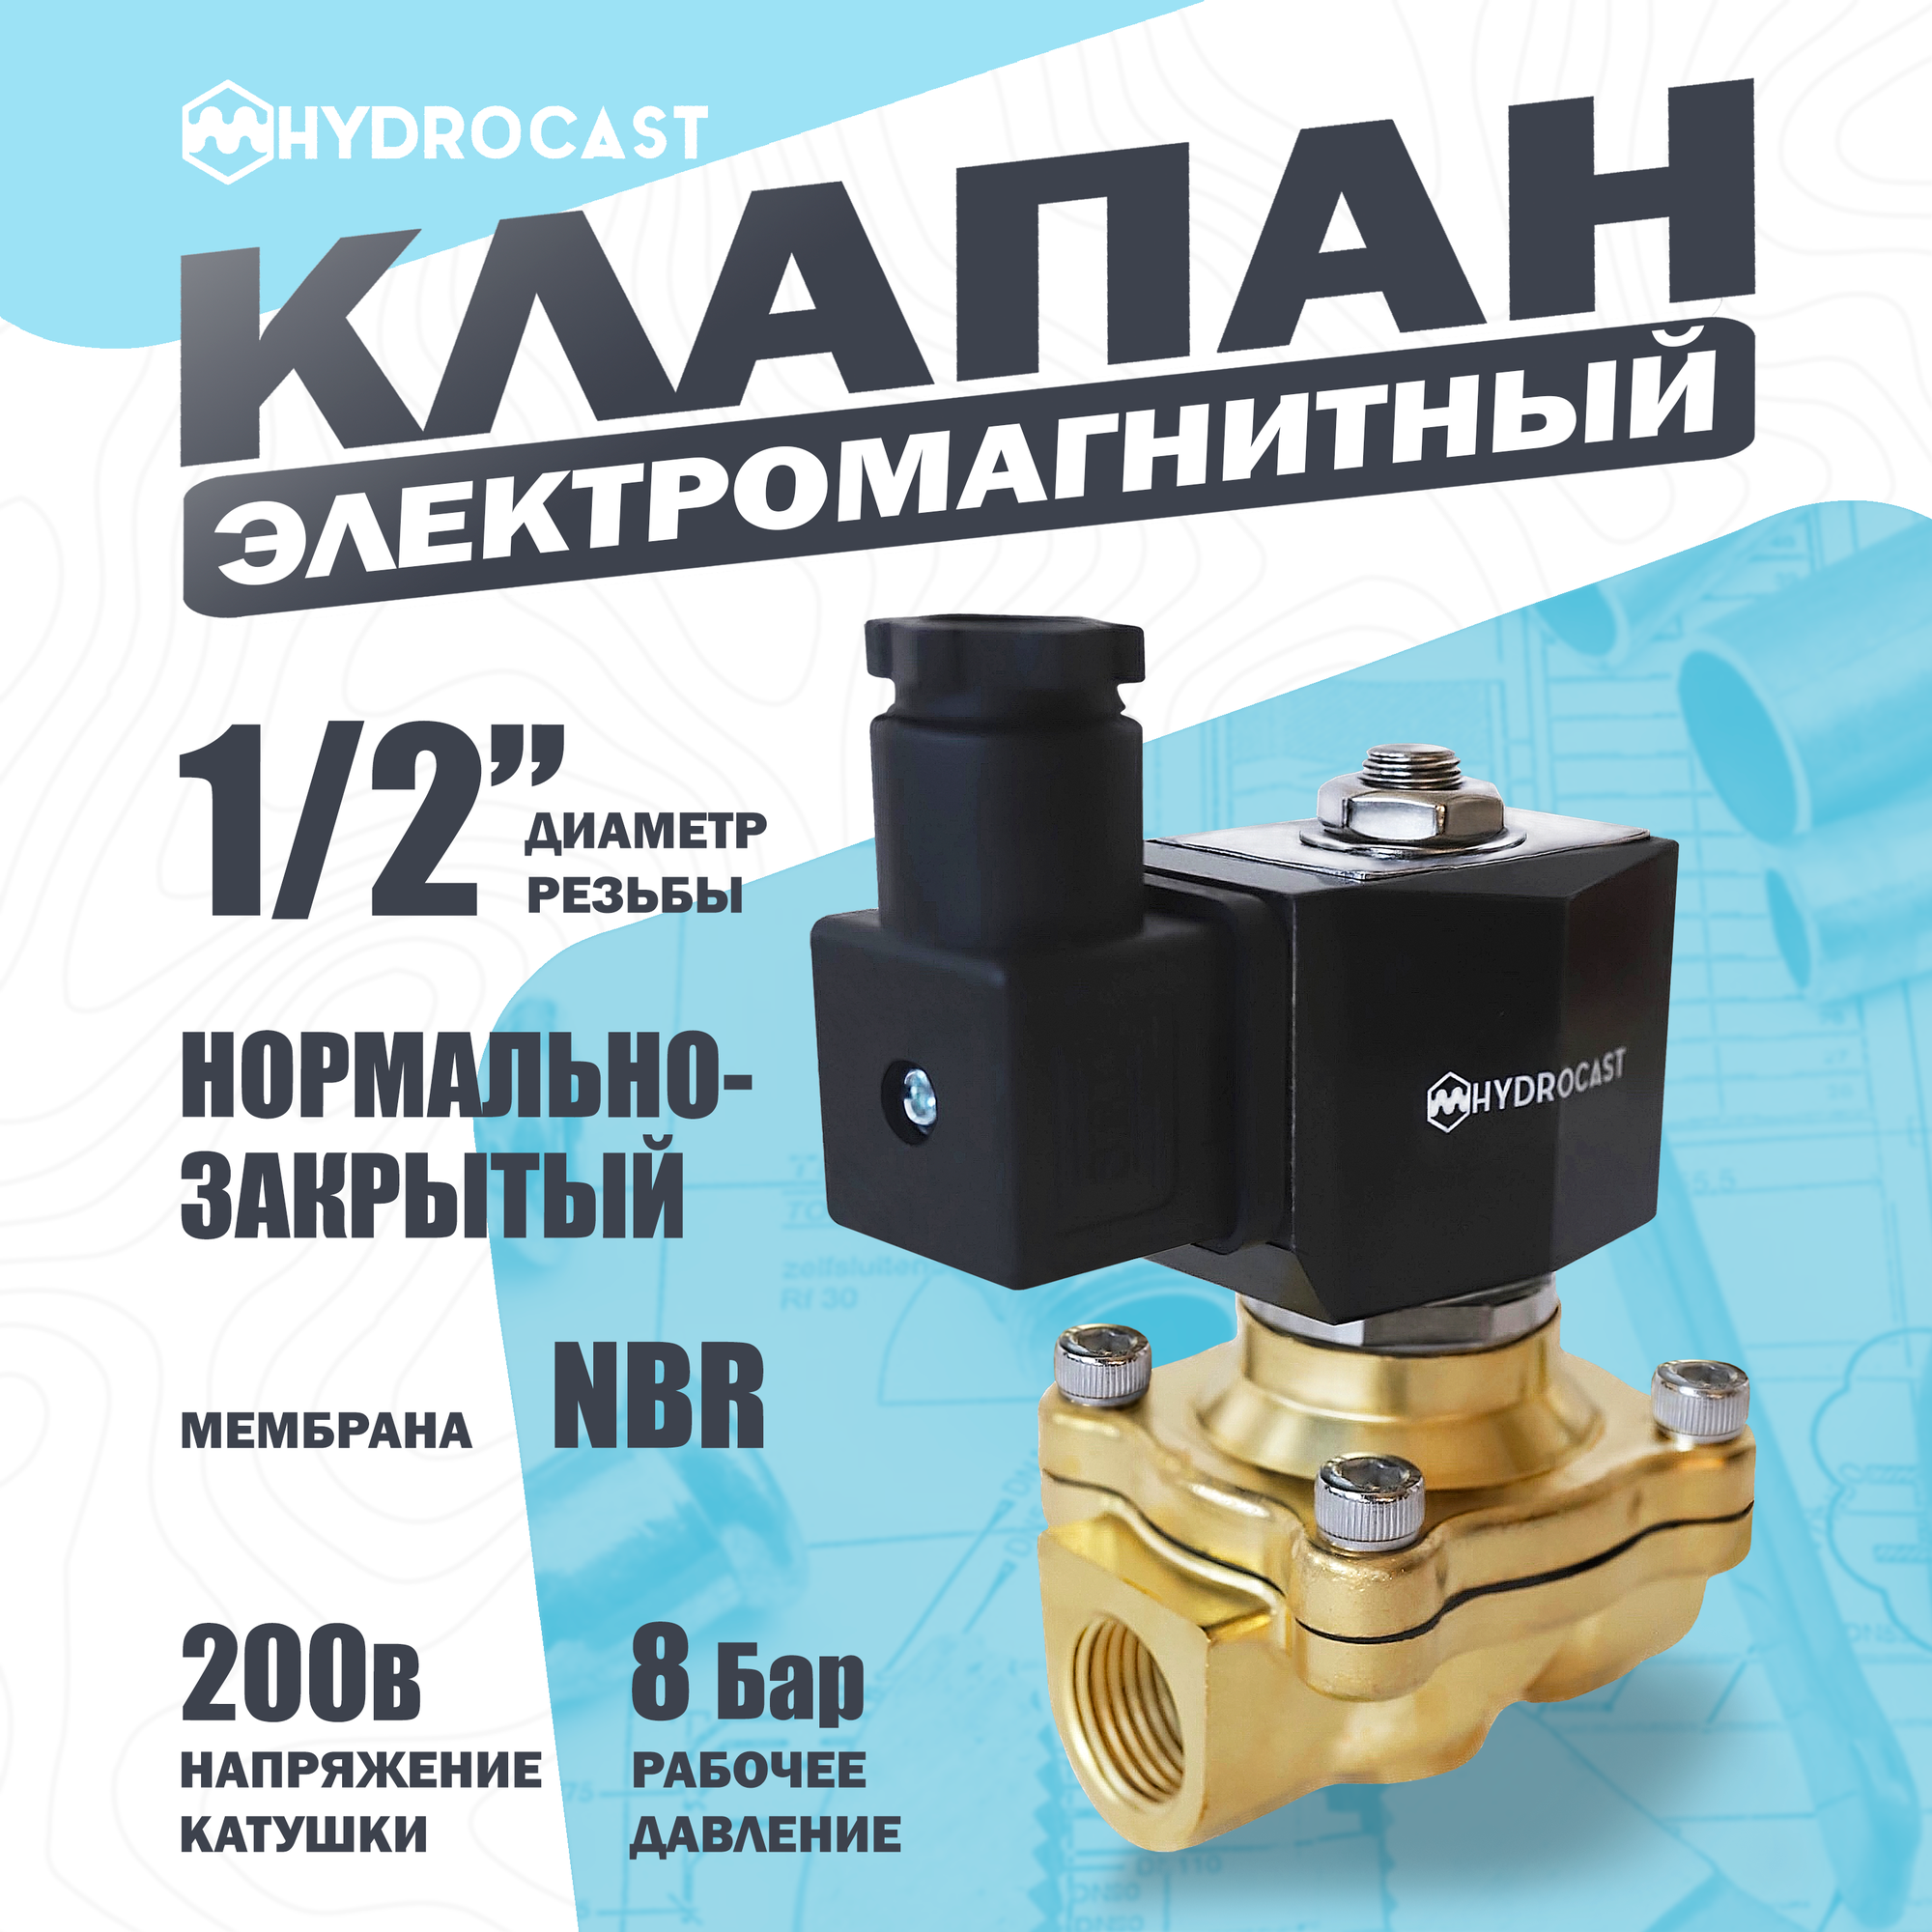 Электромагнитный клапан Hydrocast улучшенный DW21-15 G 1/2" 220 В латунь NC (закрыт при отсут. 220 В) мембрана NBR